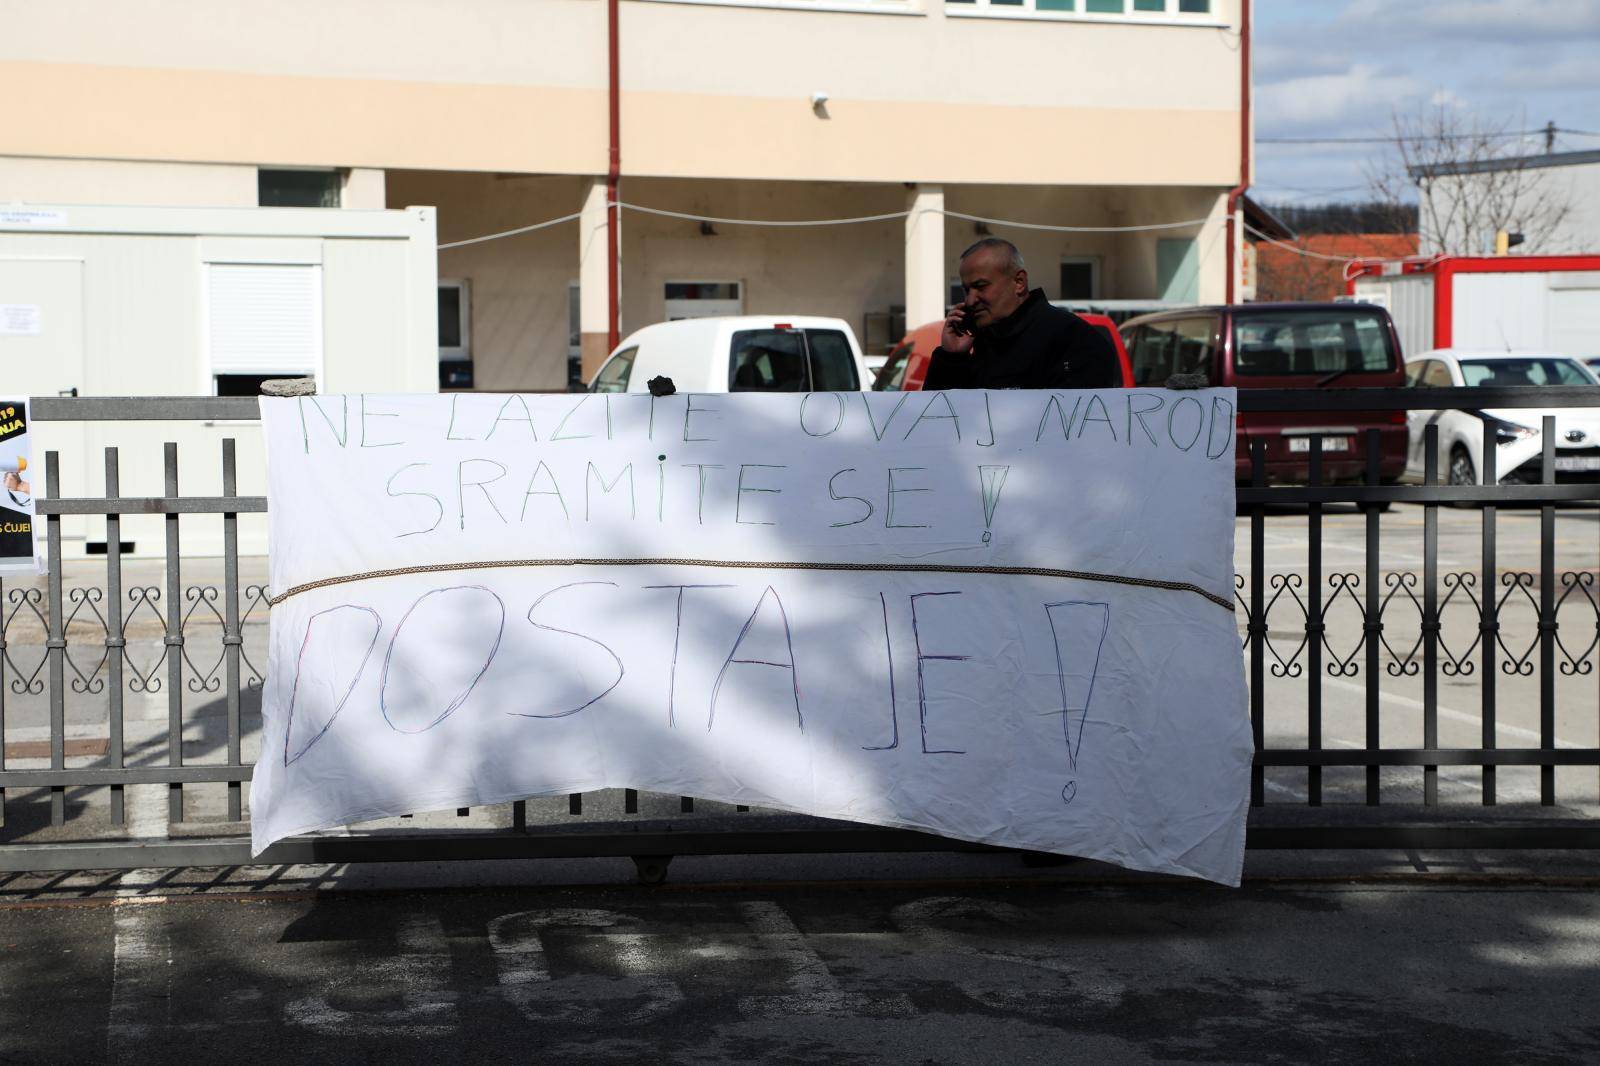 Građani Petrinje prosvjeduju zbog spore obnove grada nakon potresa